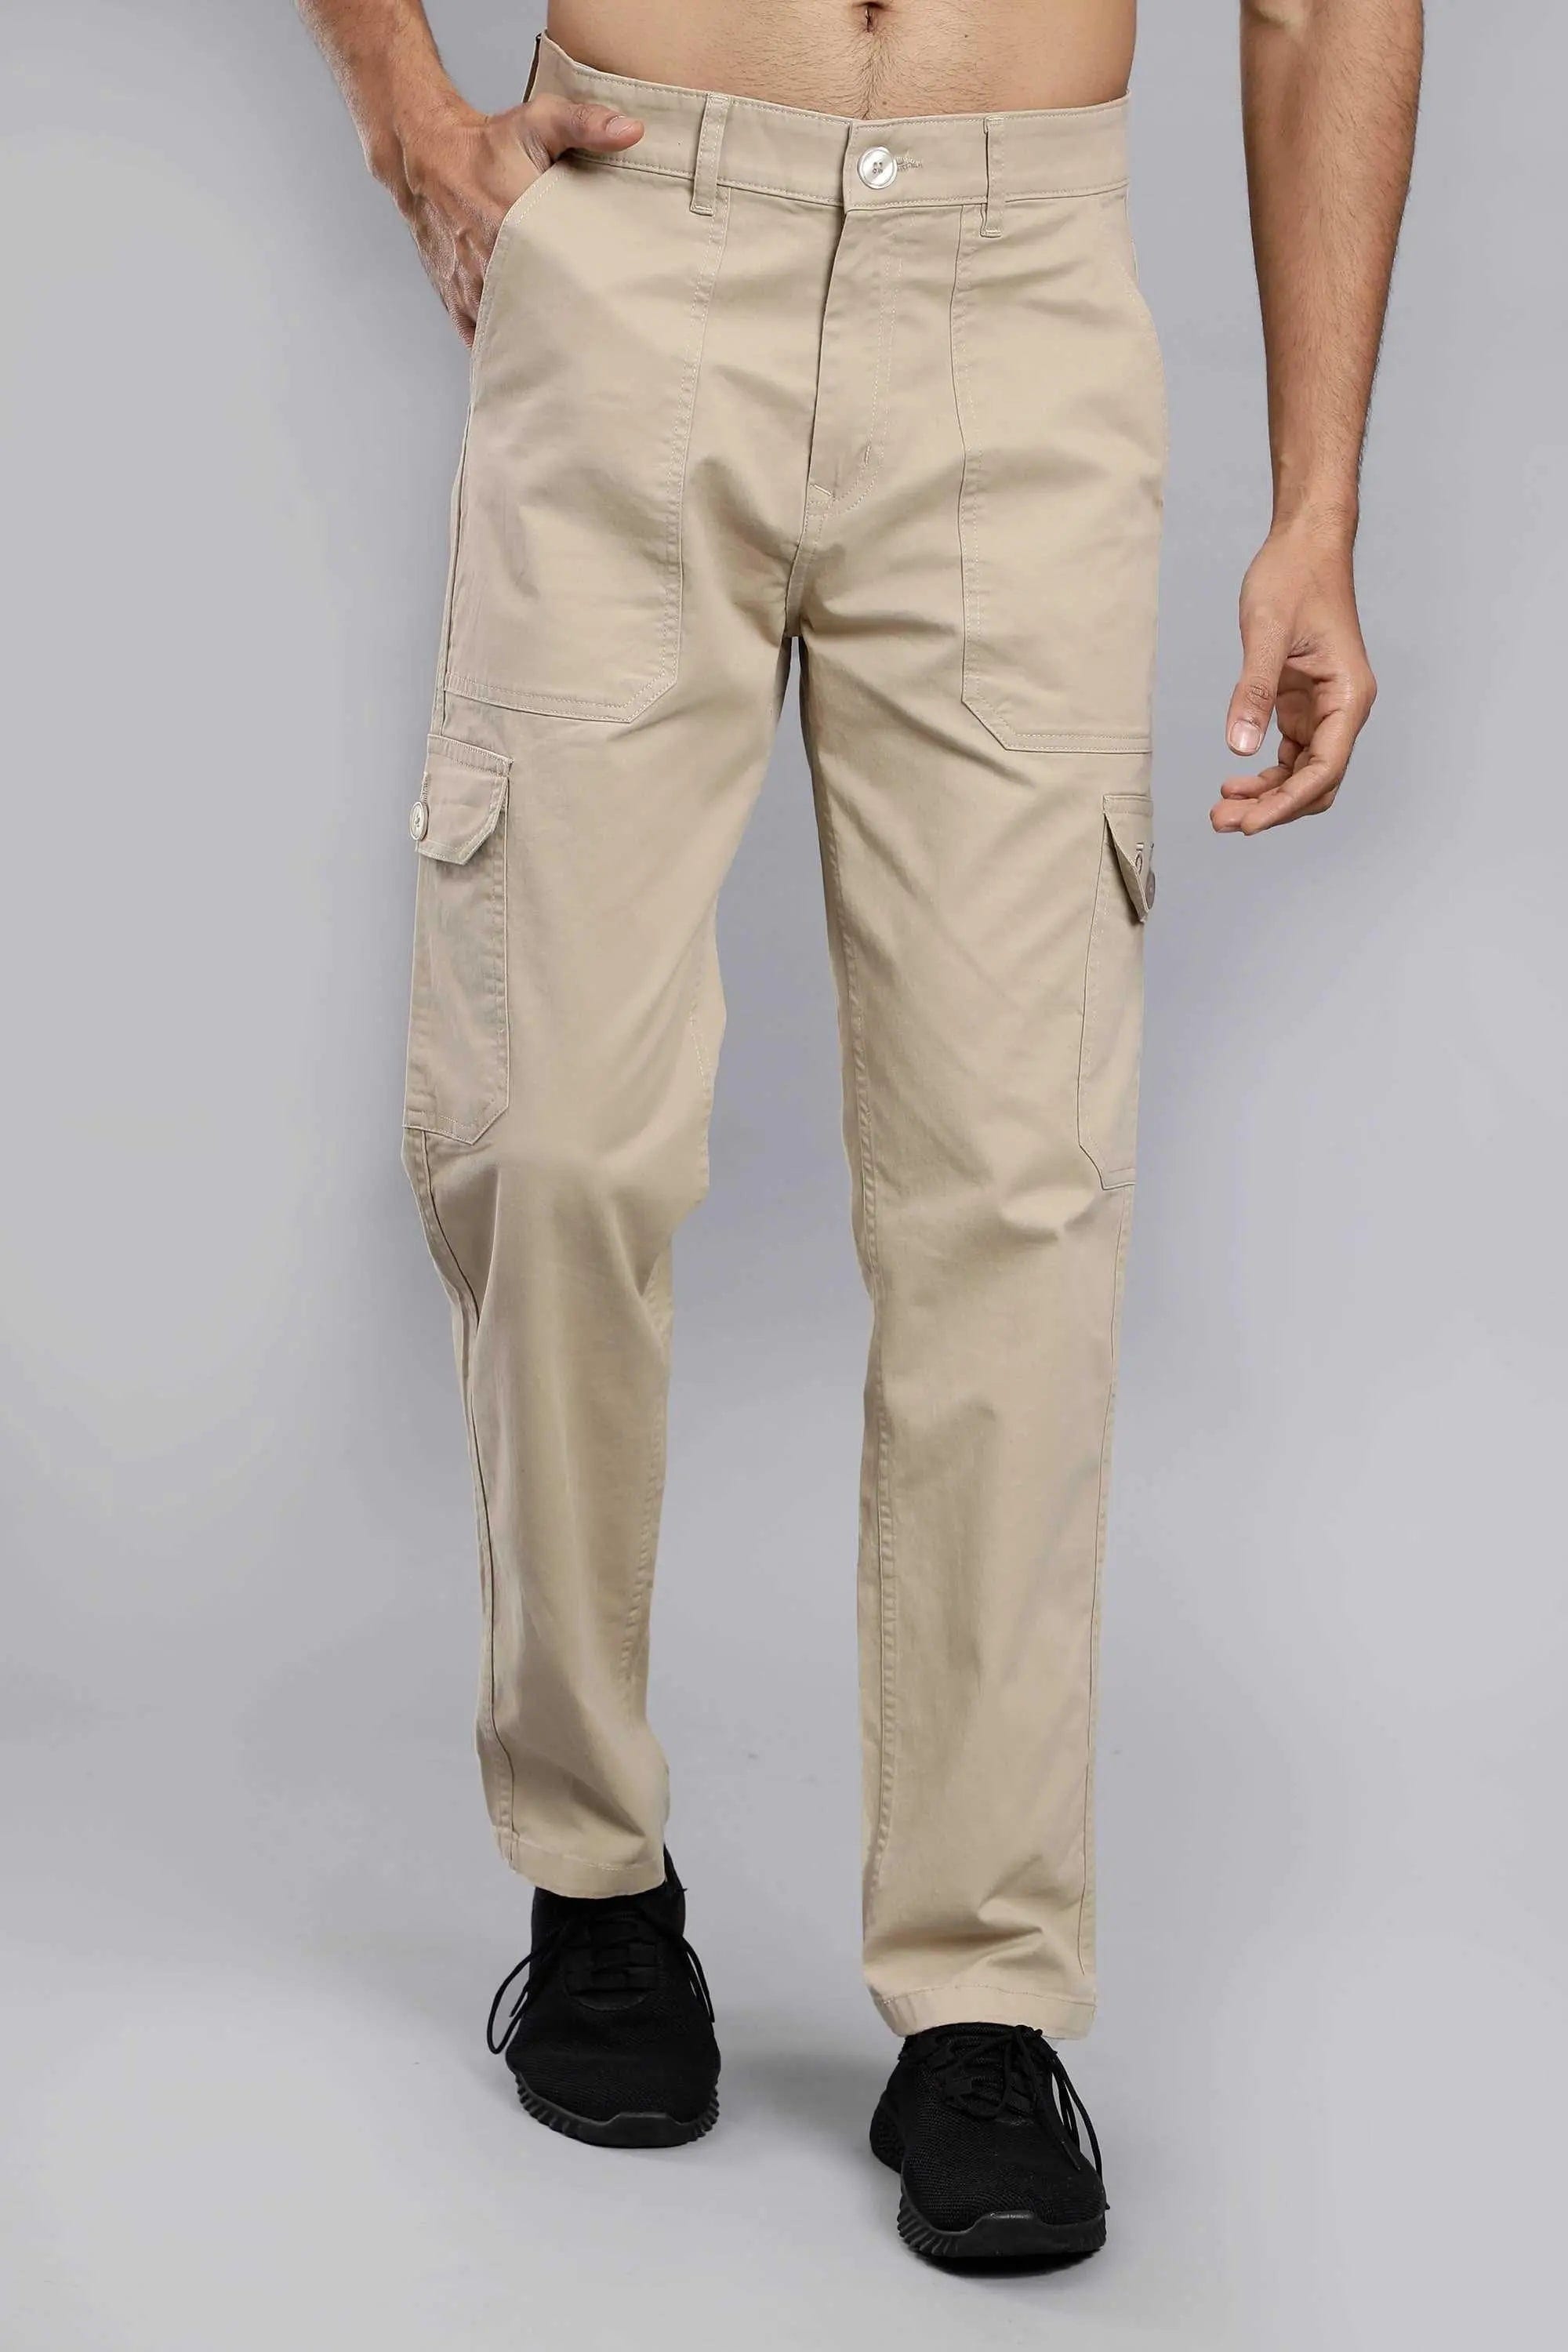 Buy Highlander Khaki Loose Fit Solid Cargo Trouser for Men Online at Rs.701  - Ketch